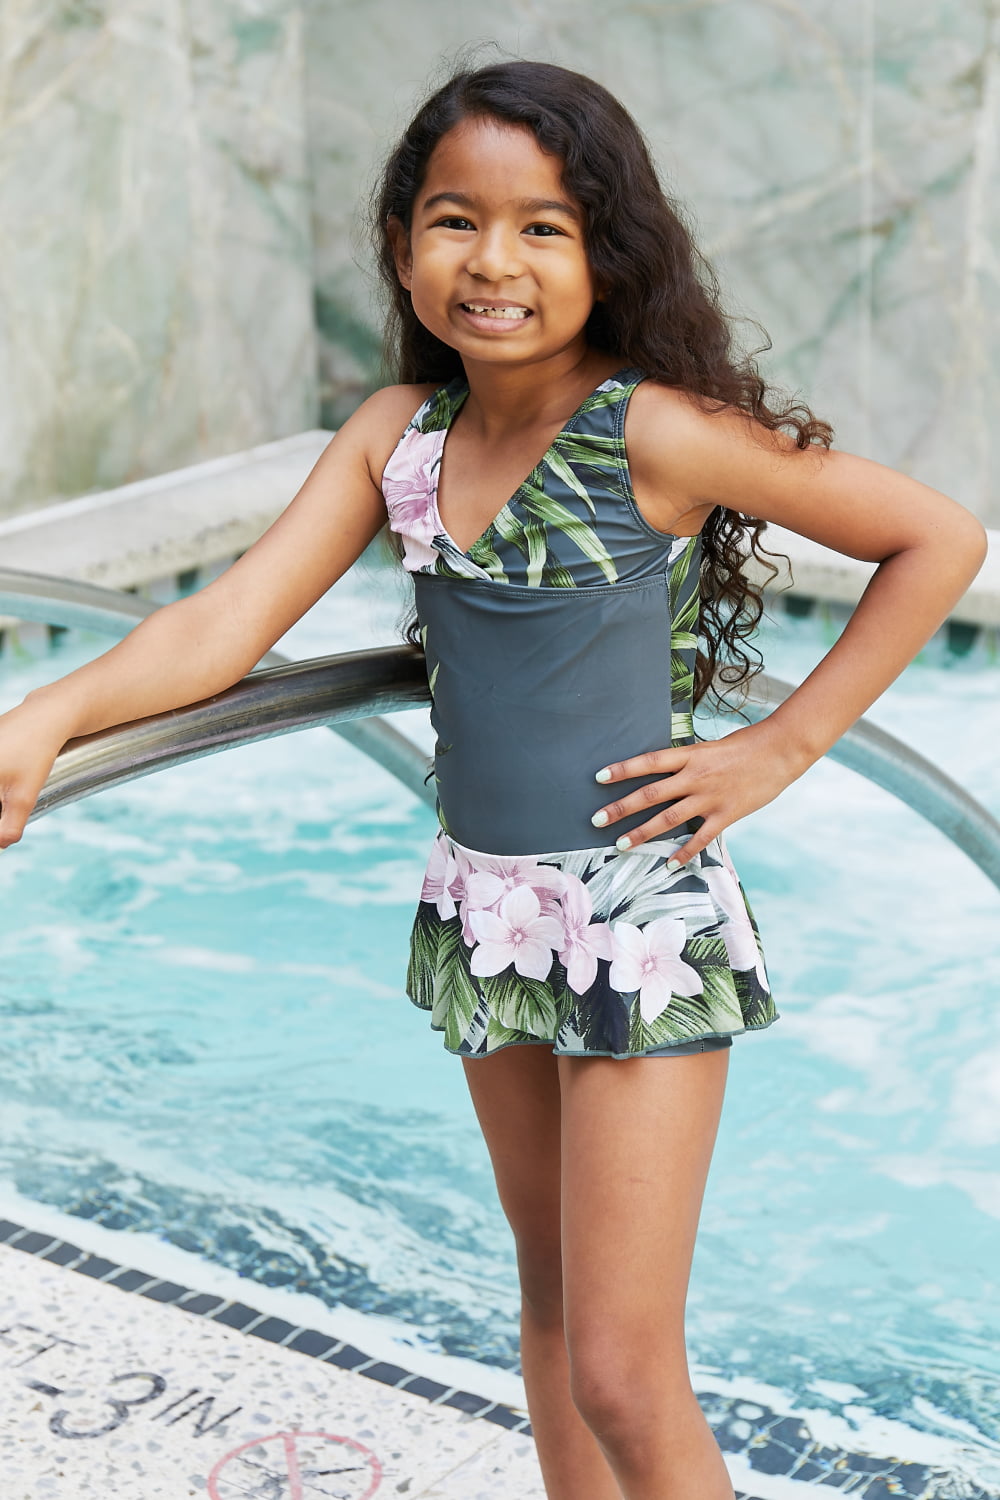 Toddler / Kids - Girls - Marina West Swim Clear Waters Swim Dress in Aloha Forest - Sizes 2-3T-Kids 10/11